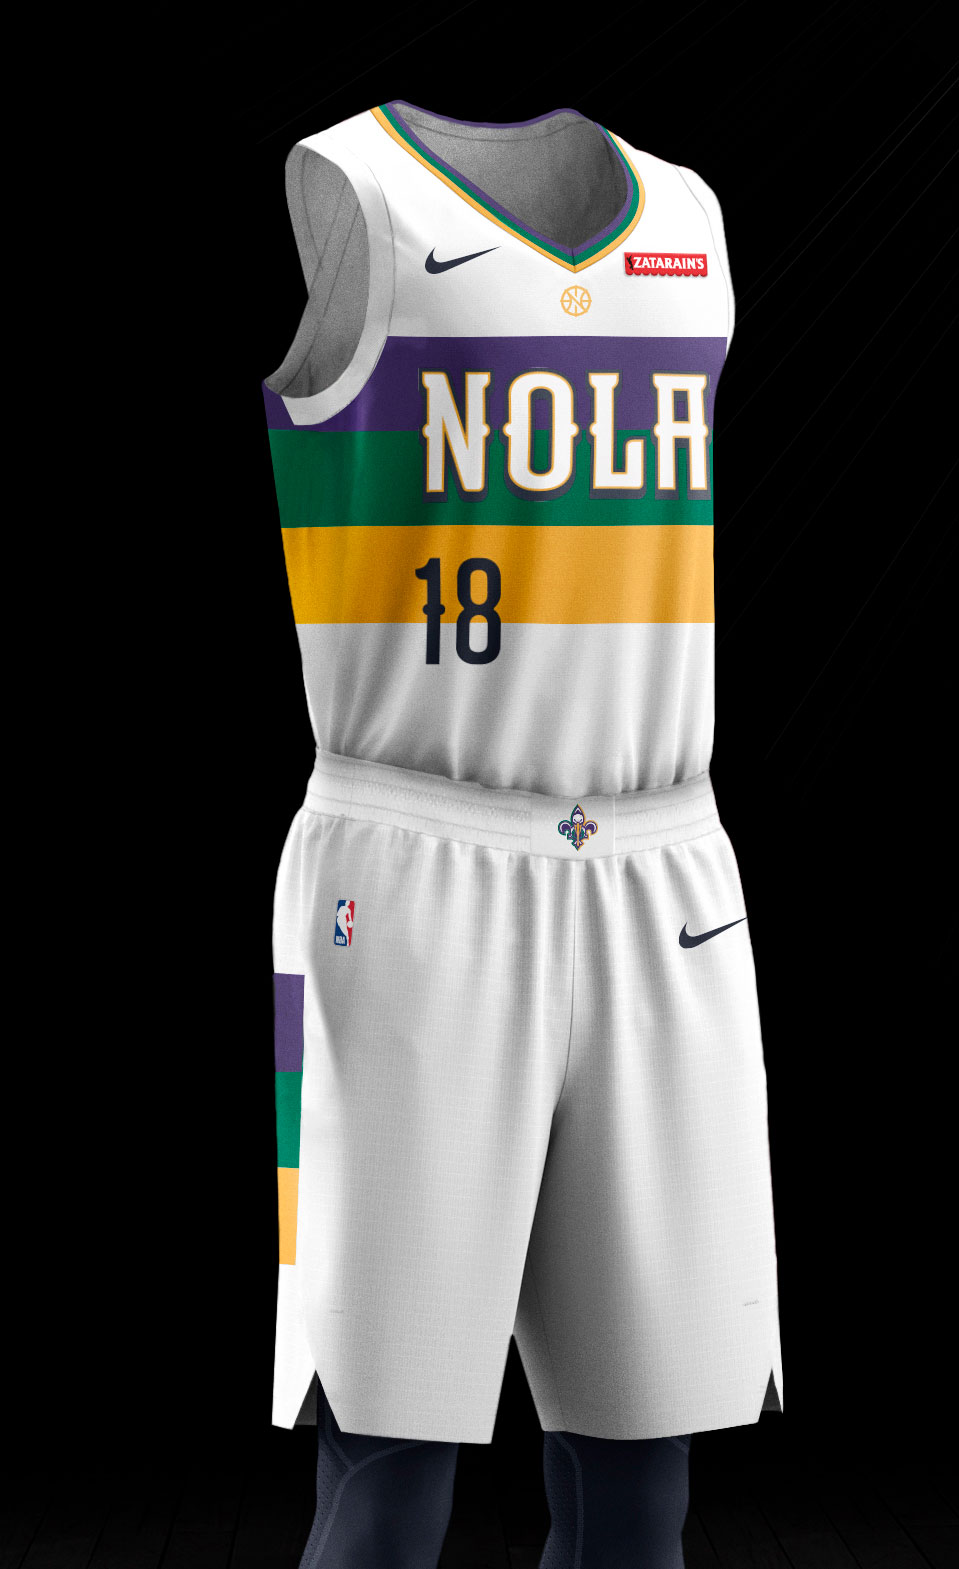 Pelicans' Mardi Gras uniforms are deep purple this year, Pelicans